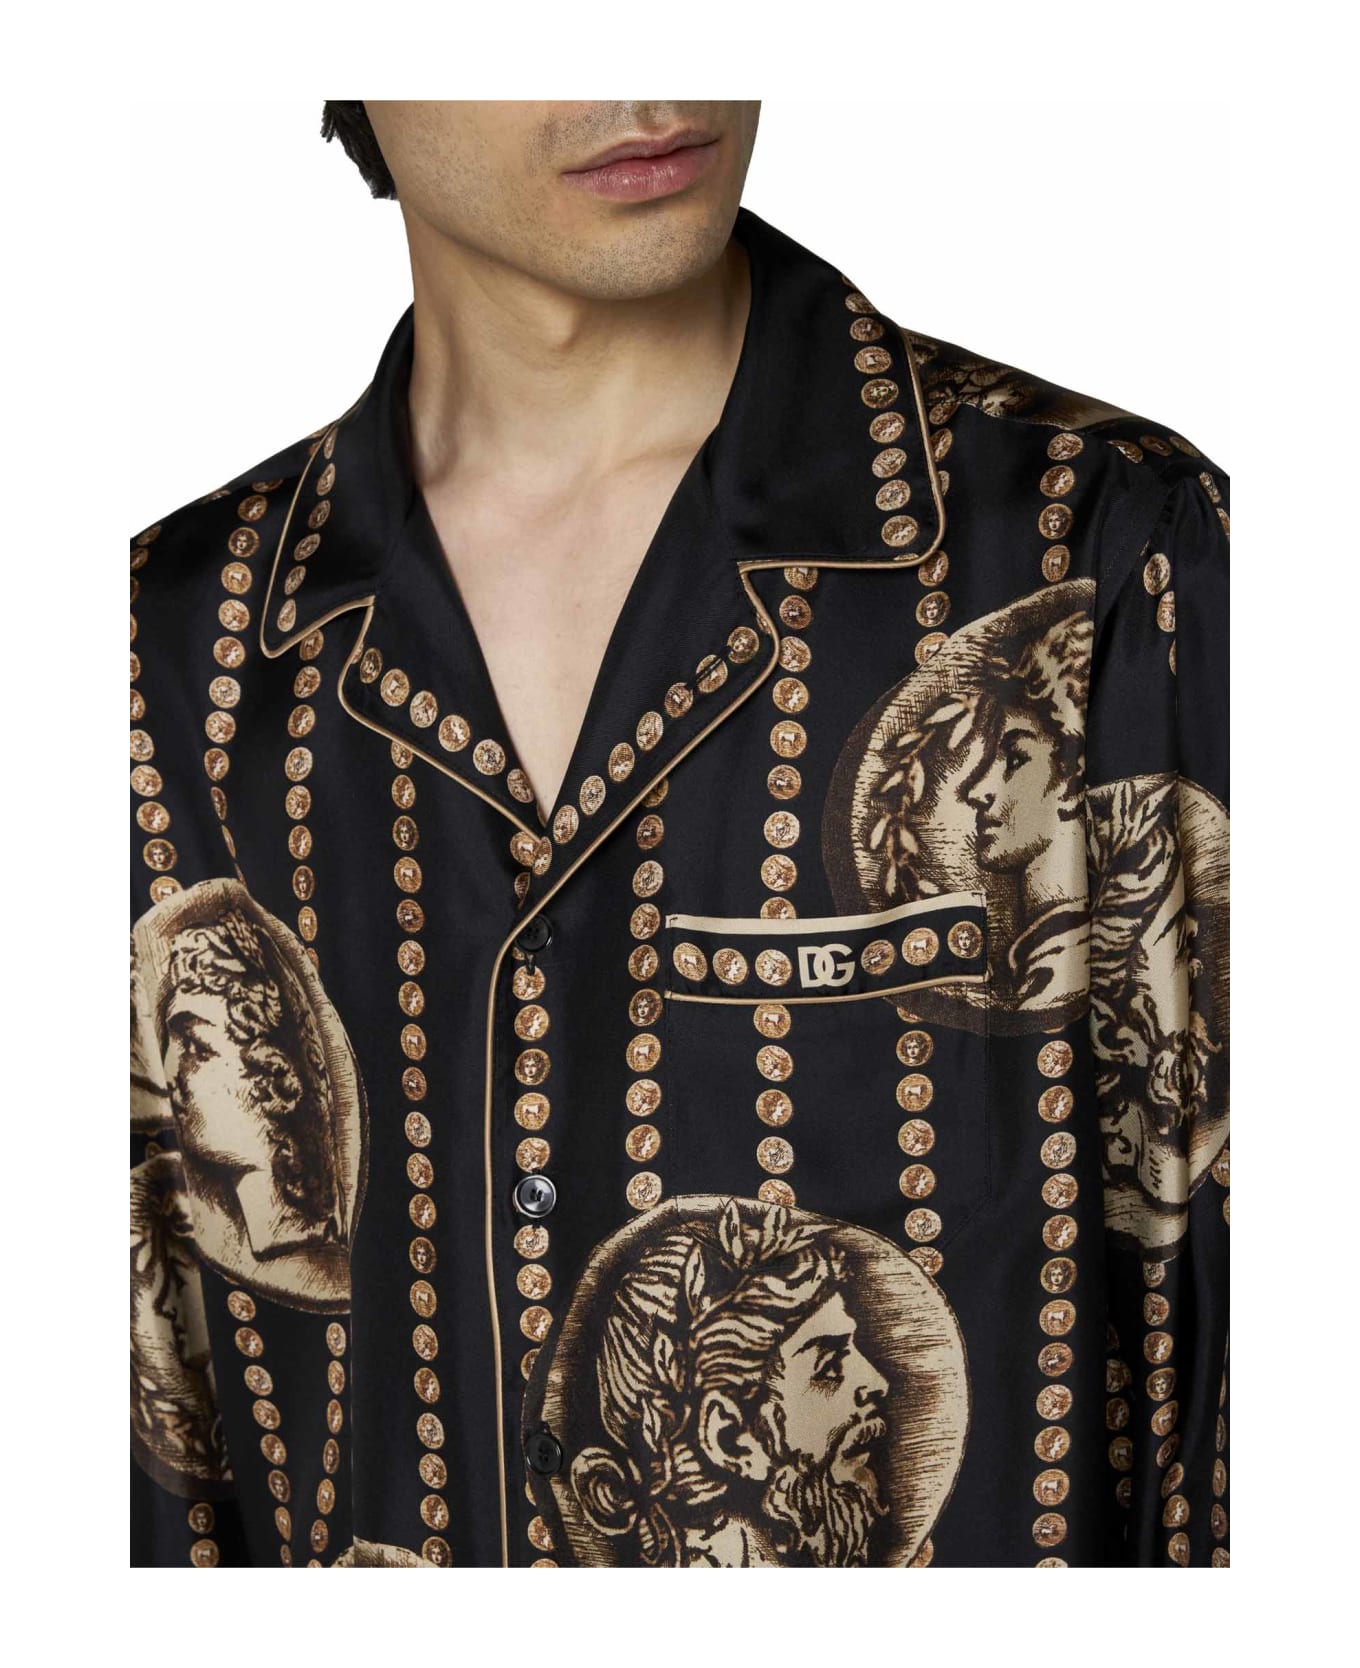 Dolce & Gabbana Silk Shirt - Black シャツ